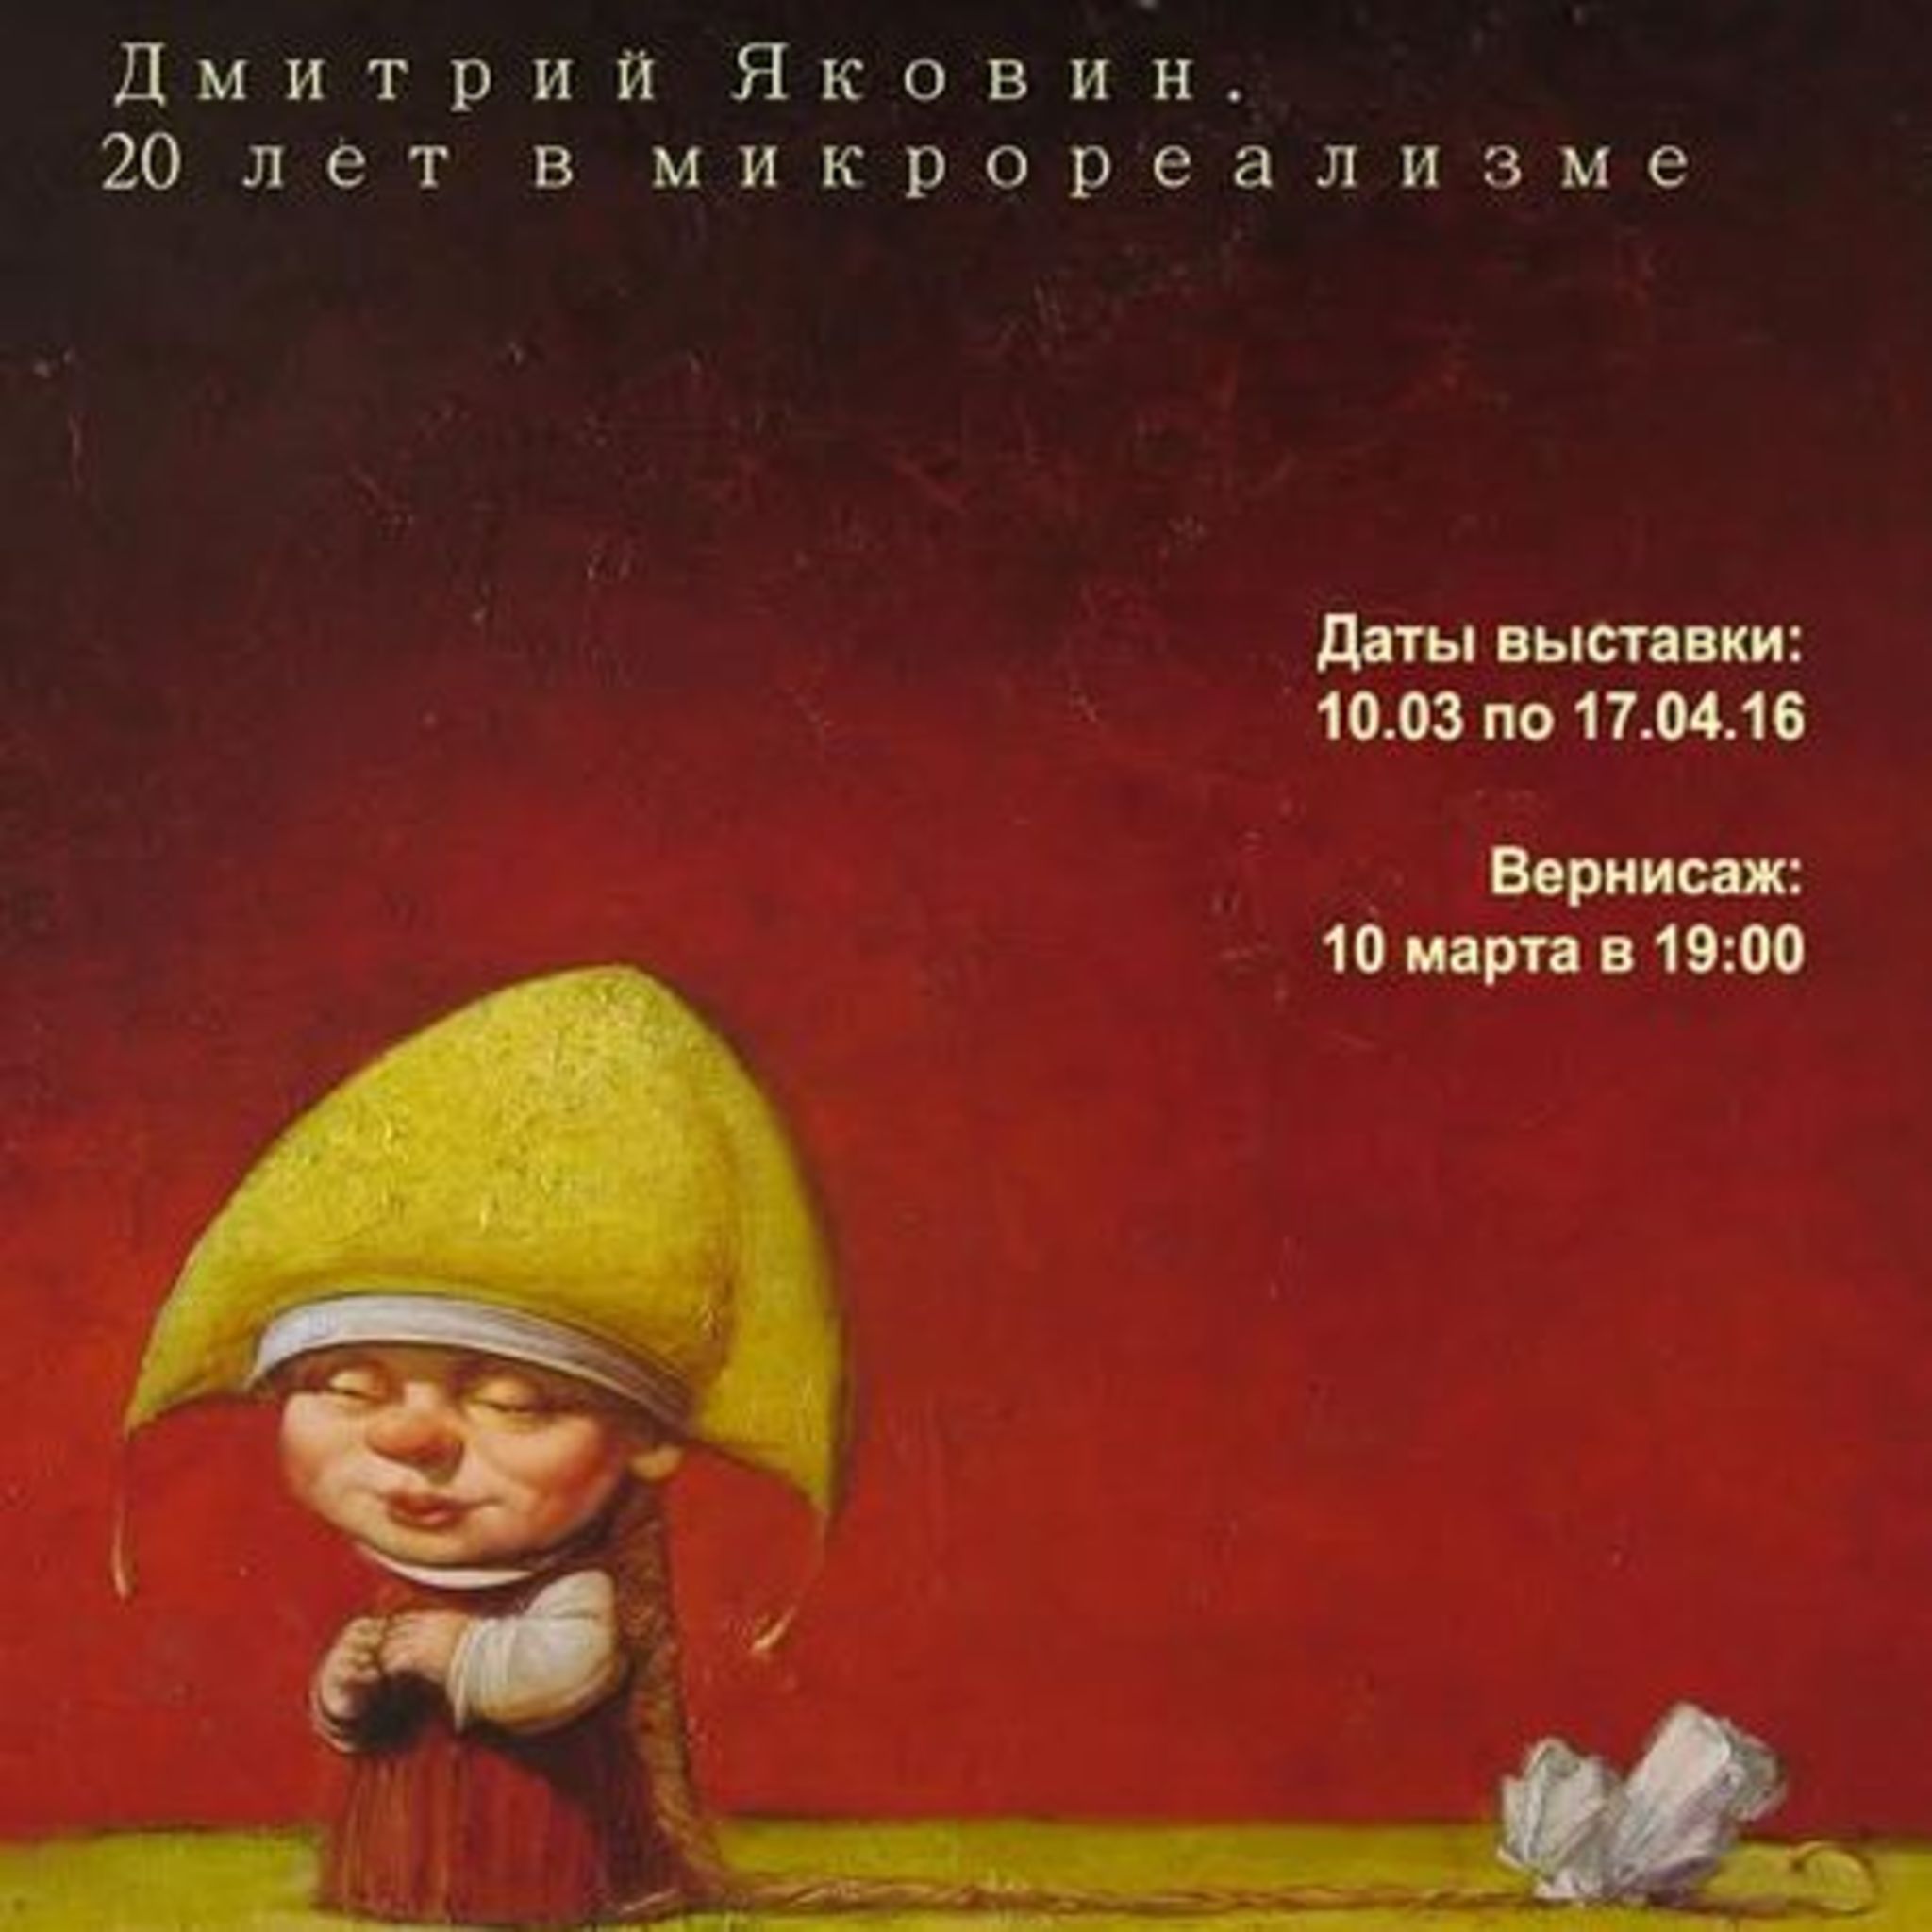 Dmitry Yakovina exhibition. 20 years in the micro realism